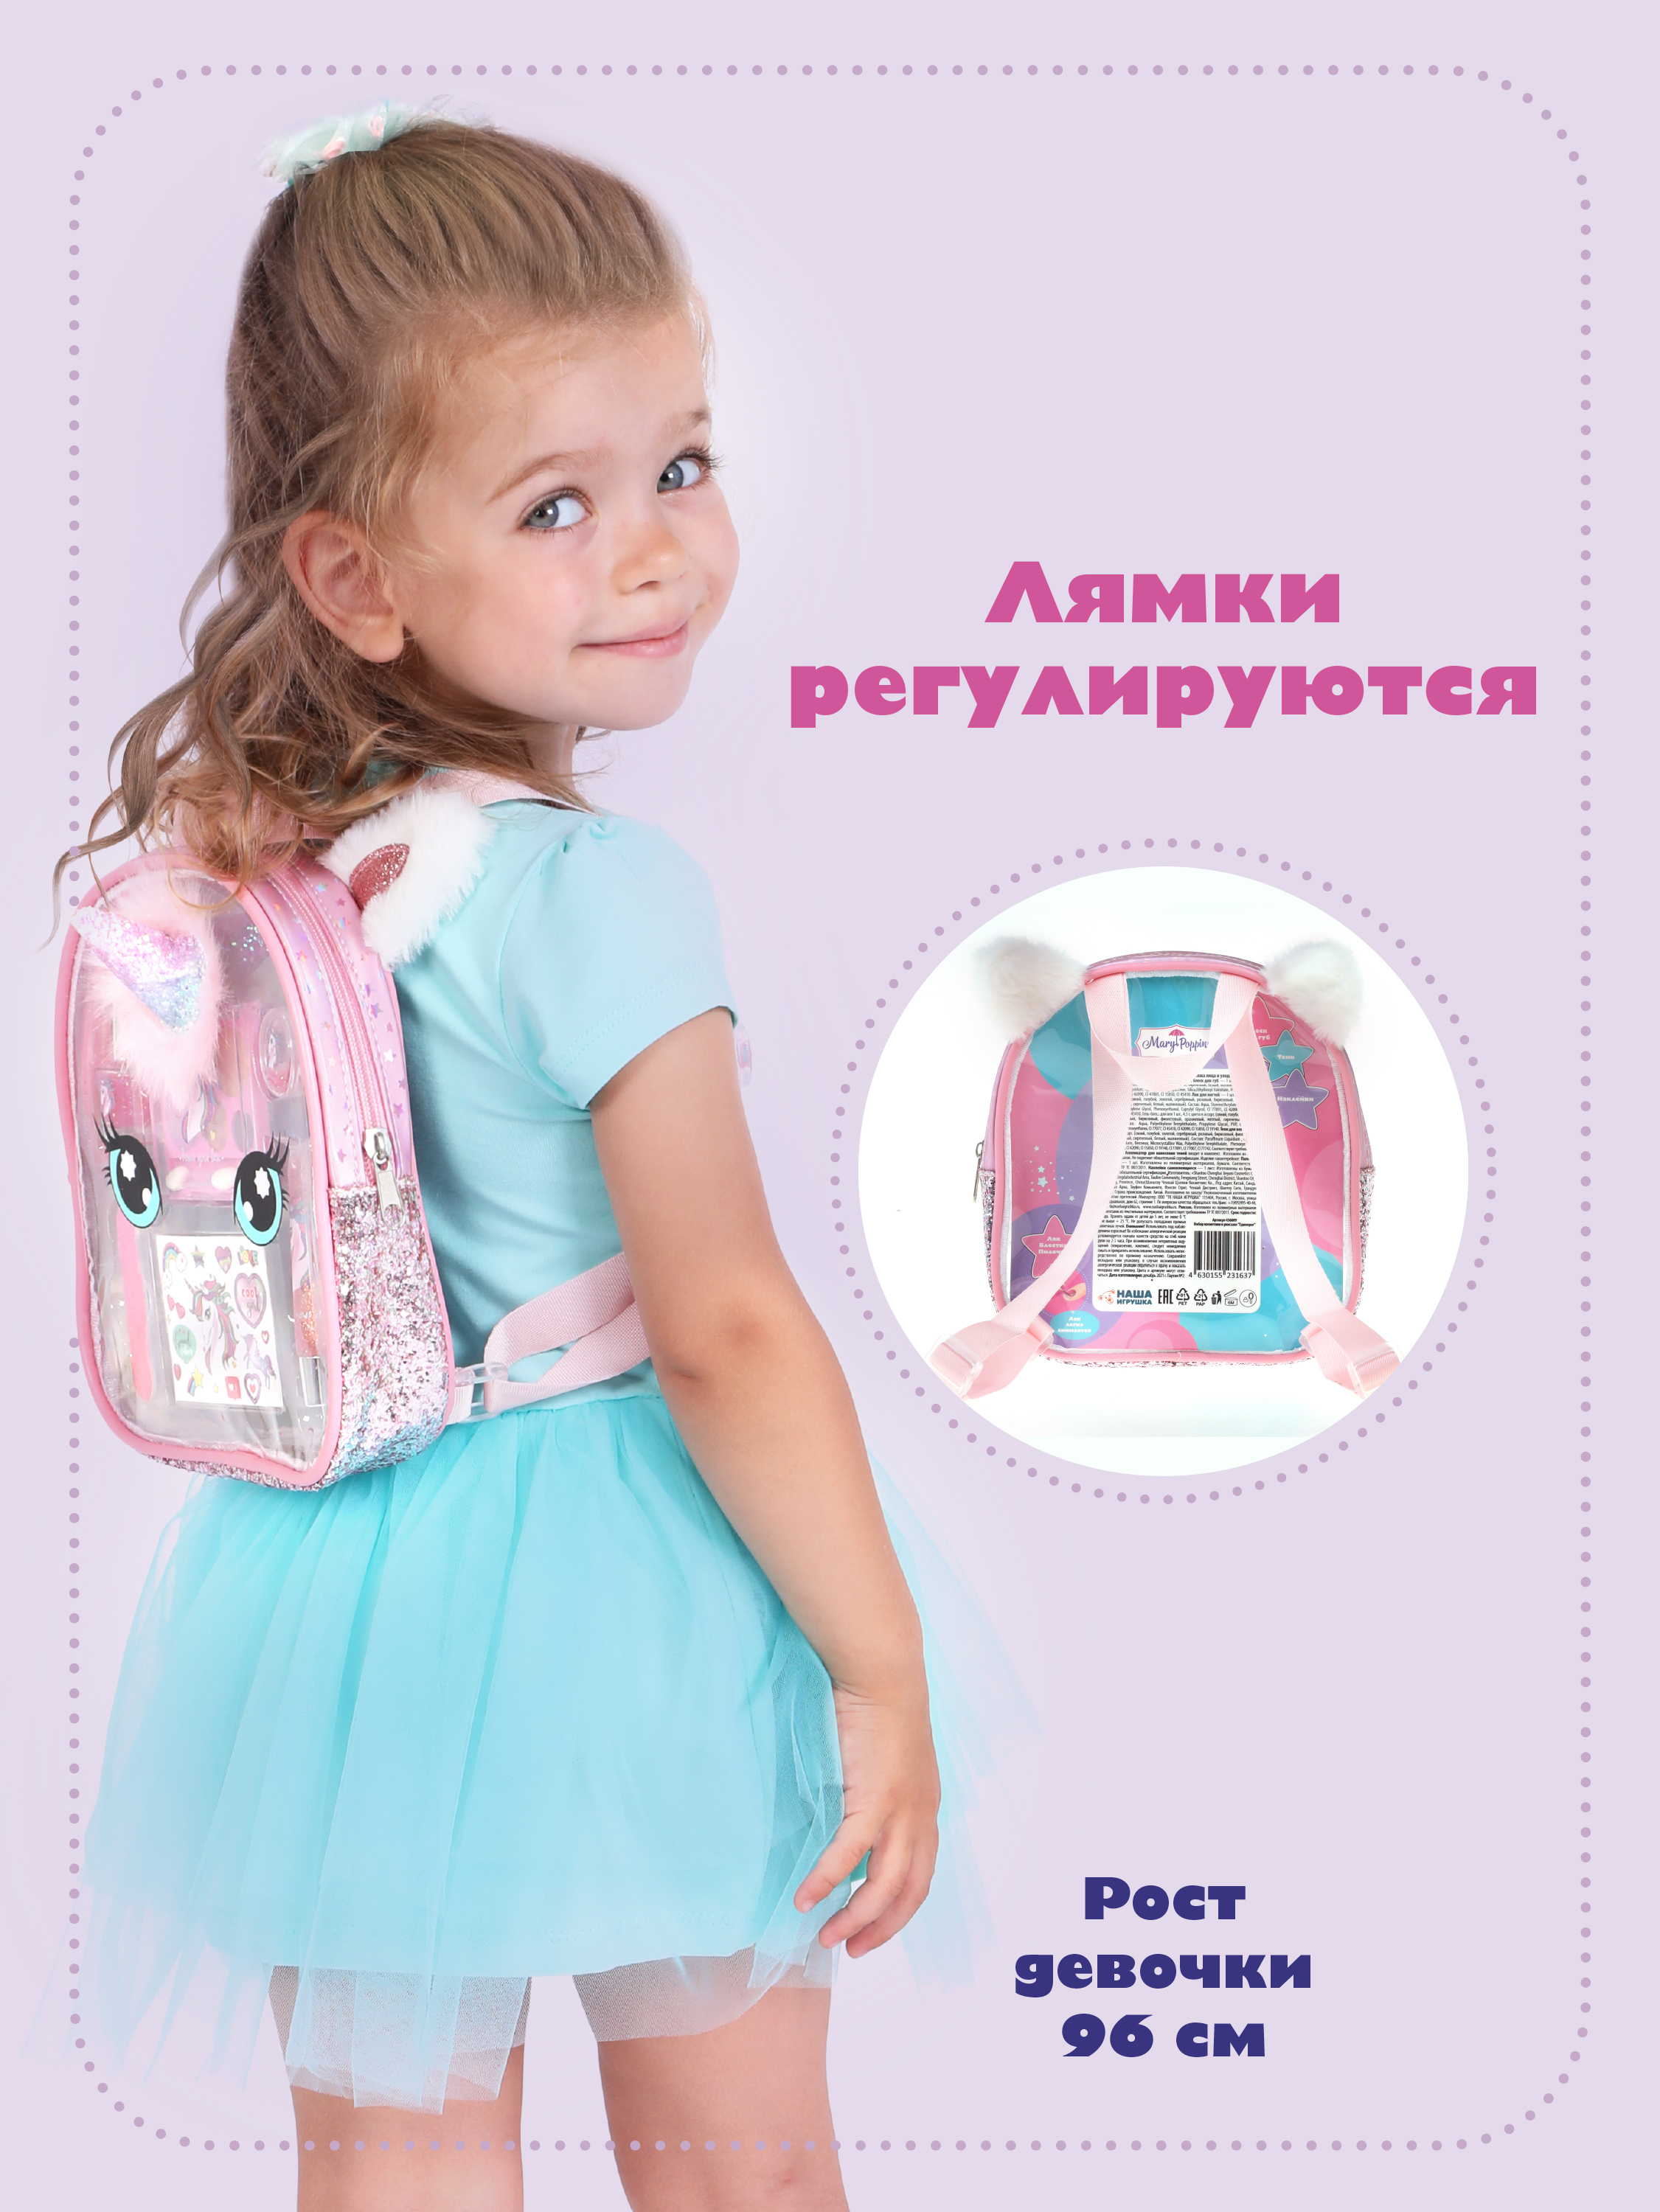 Косметика детская Mary Poppins набор для девочек тени для век гель блеск помада в рюкзаке Единорог - фото 6